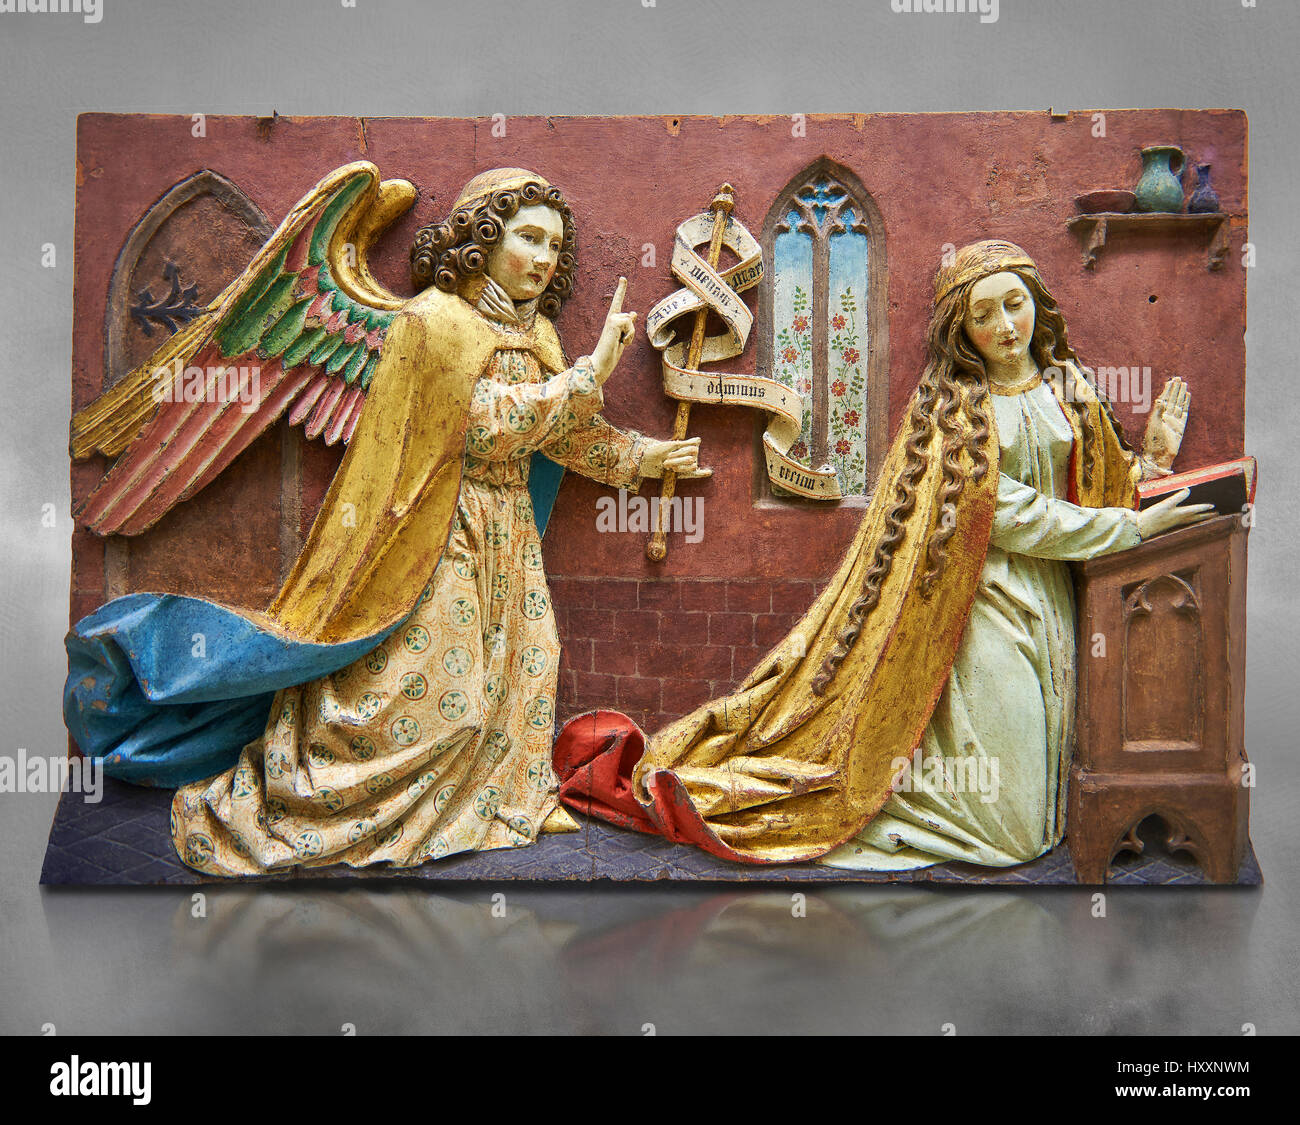 Panneau peint de l'Annonciation de secours de la Vierge, peut-être du 16ème siècle, Tyrol, Autriche. Inv 2352 Musée du Louvre, Paris. Banque D'Images